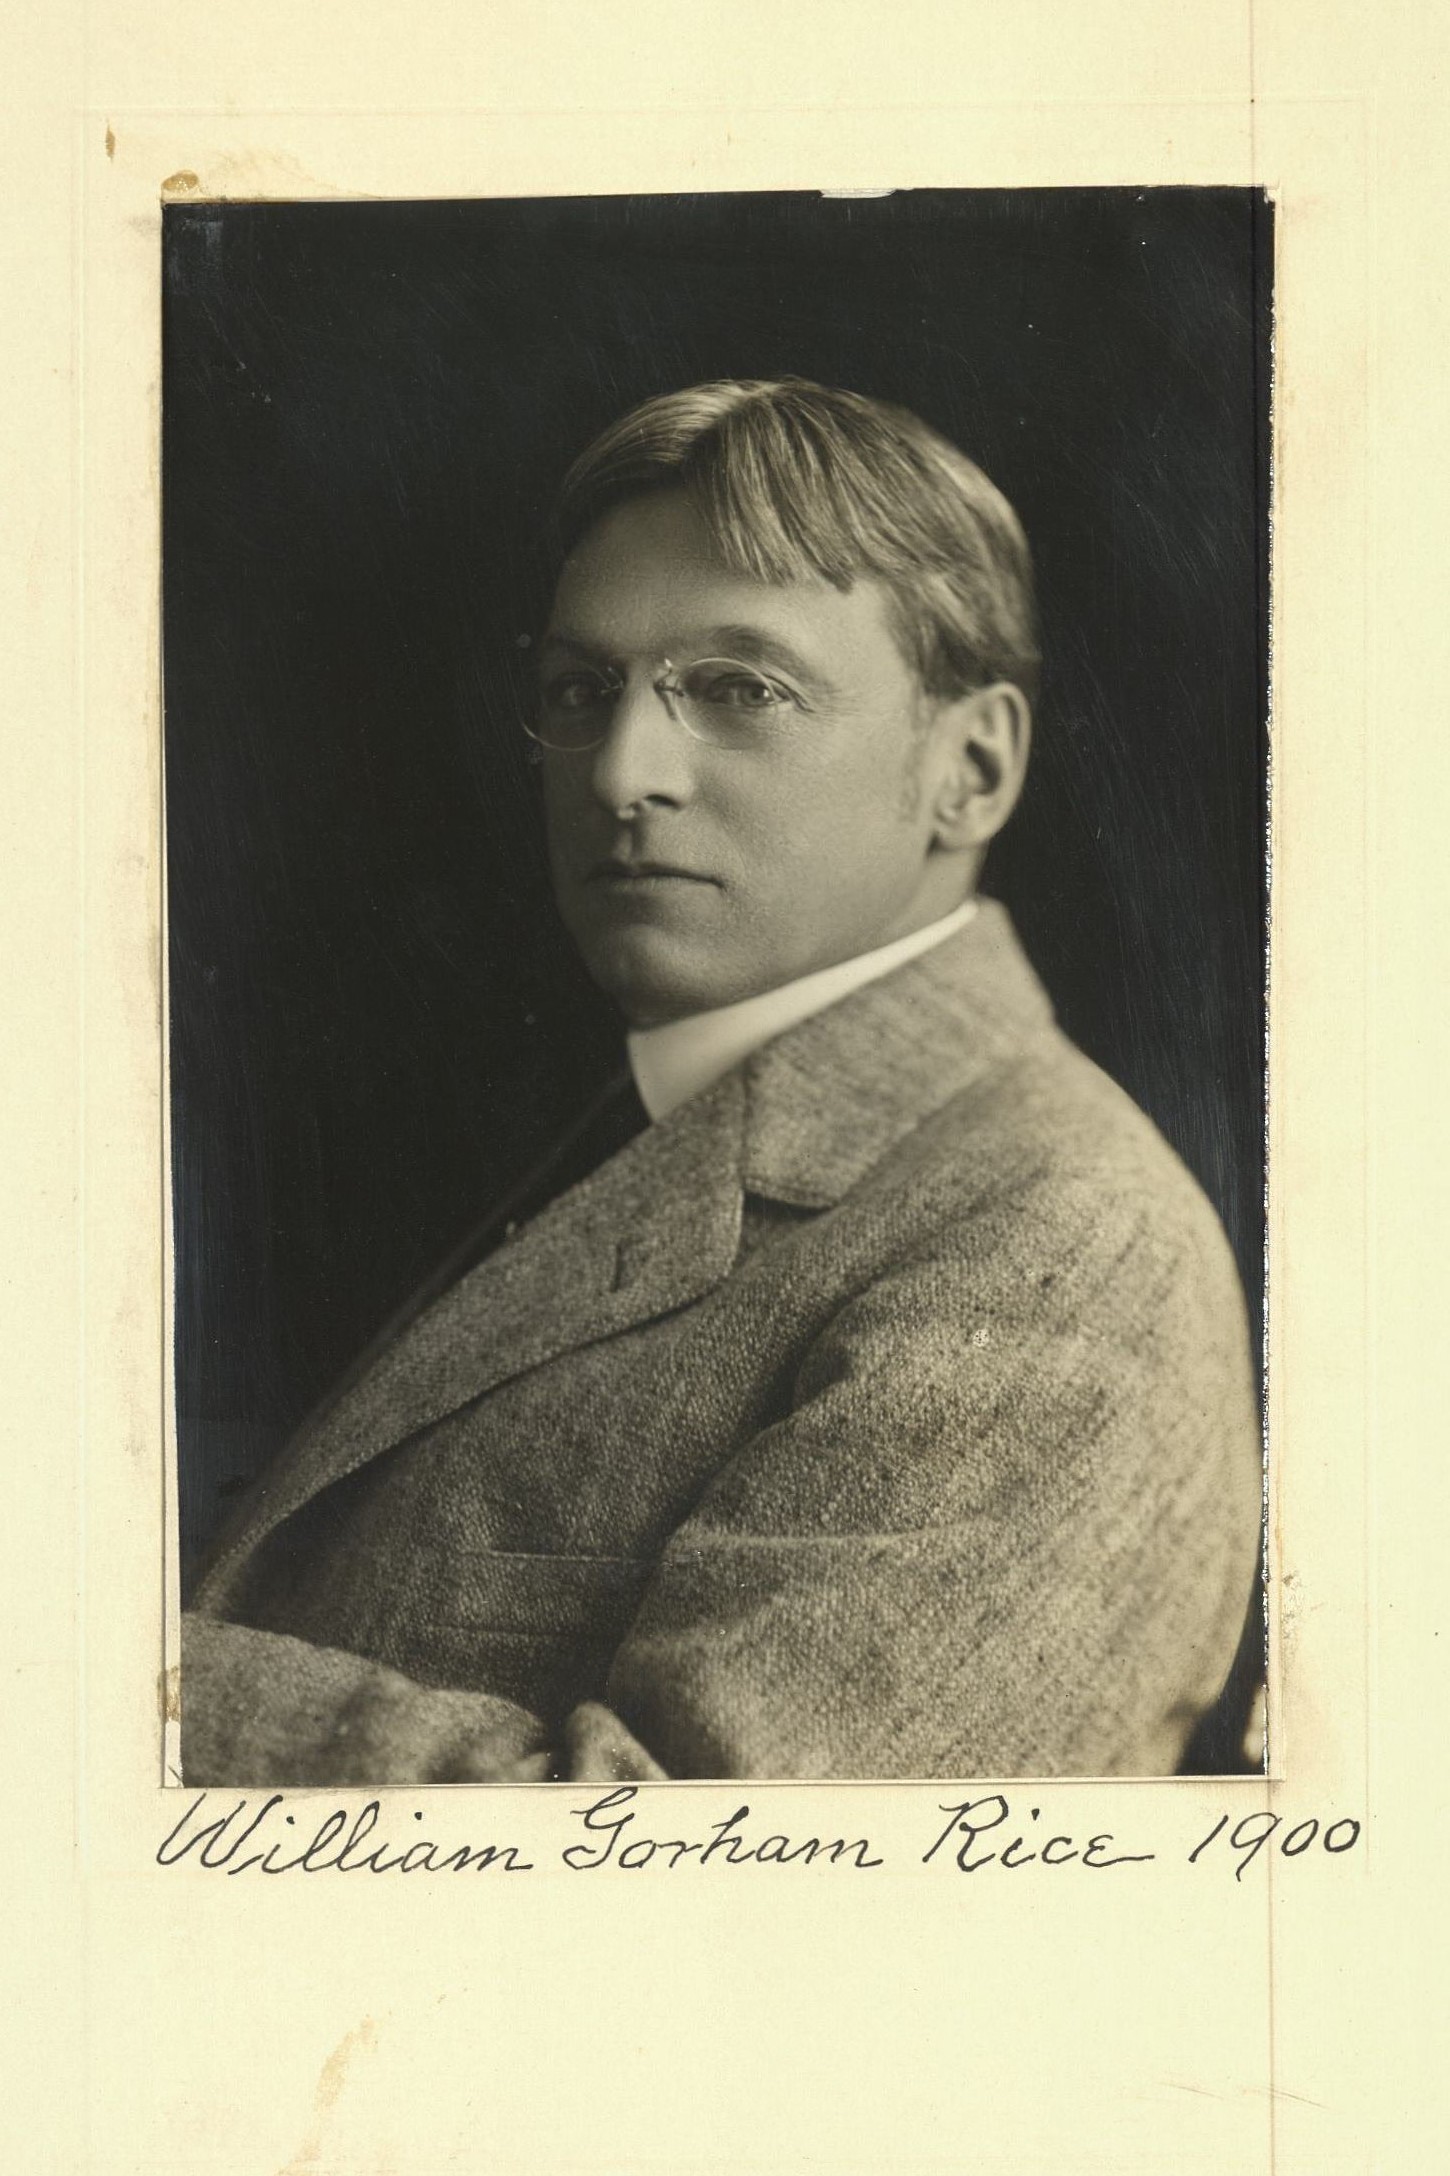 Member portrait of William Gorham Rice